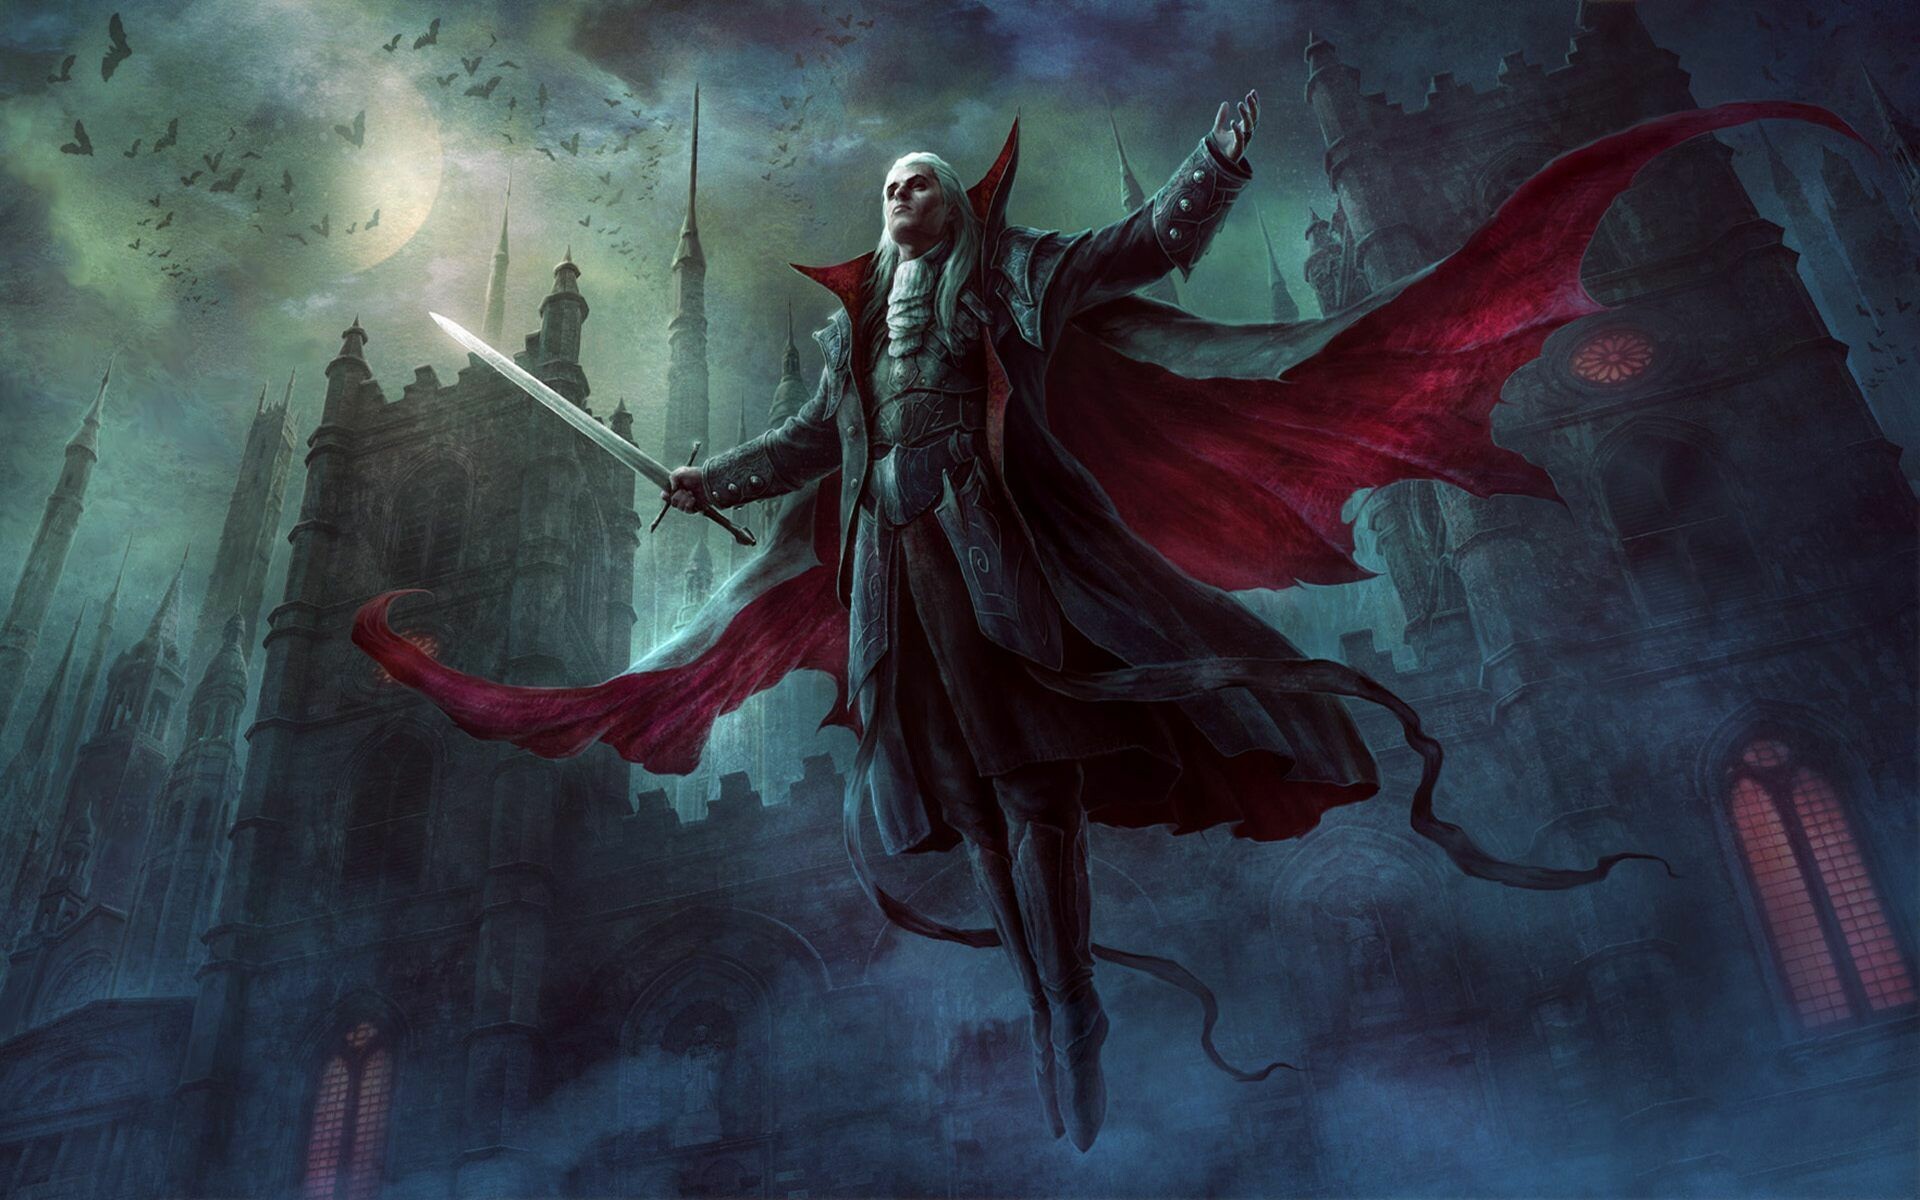 Vampire: Strahd von Zarovich, A master necromancer, a skilled warrior. 1920x1200 HD Background.